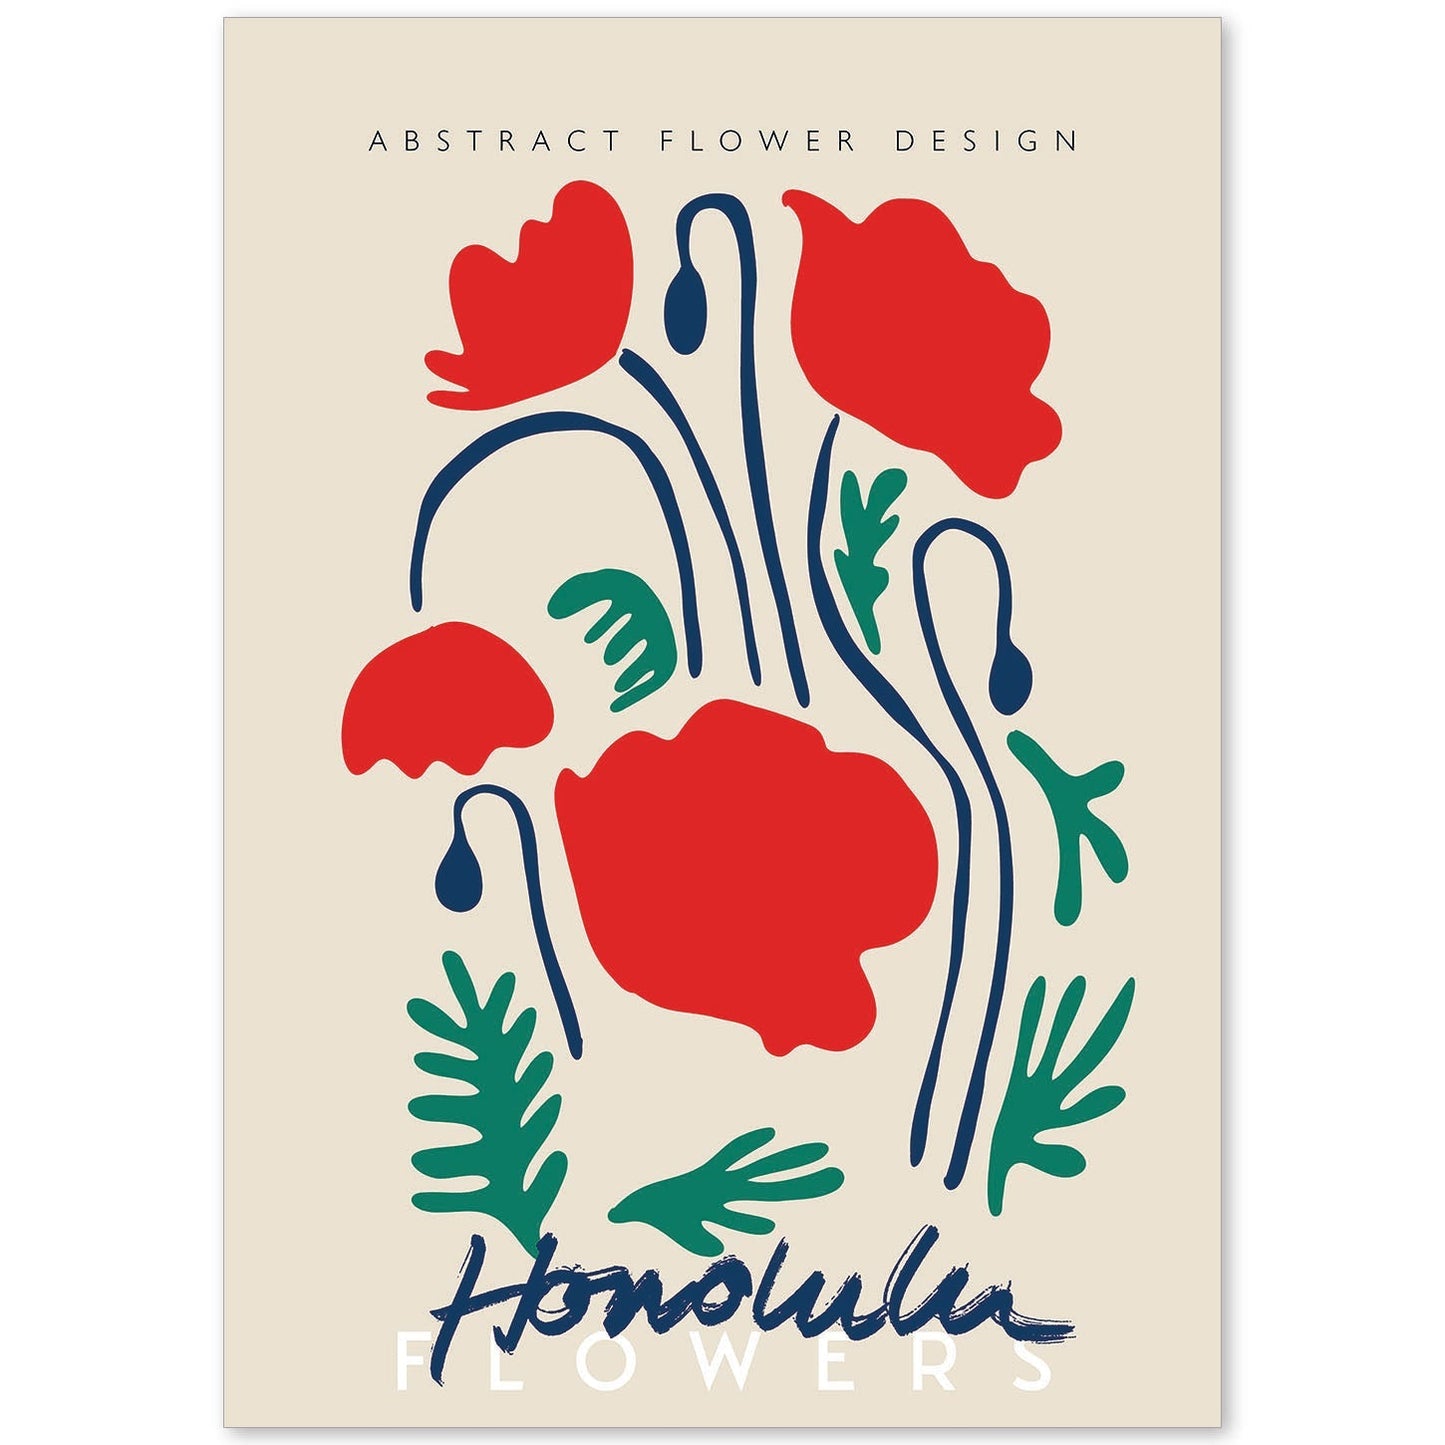 Lamina artistica decorativa con ilustración de Diseño floral abstracto Honolulu-Artwork-Nacnic-A4-Sin marco-Nacnic Estudio SL